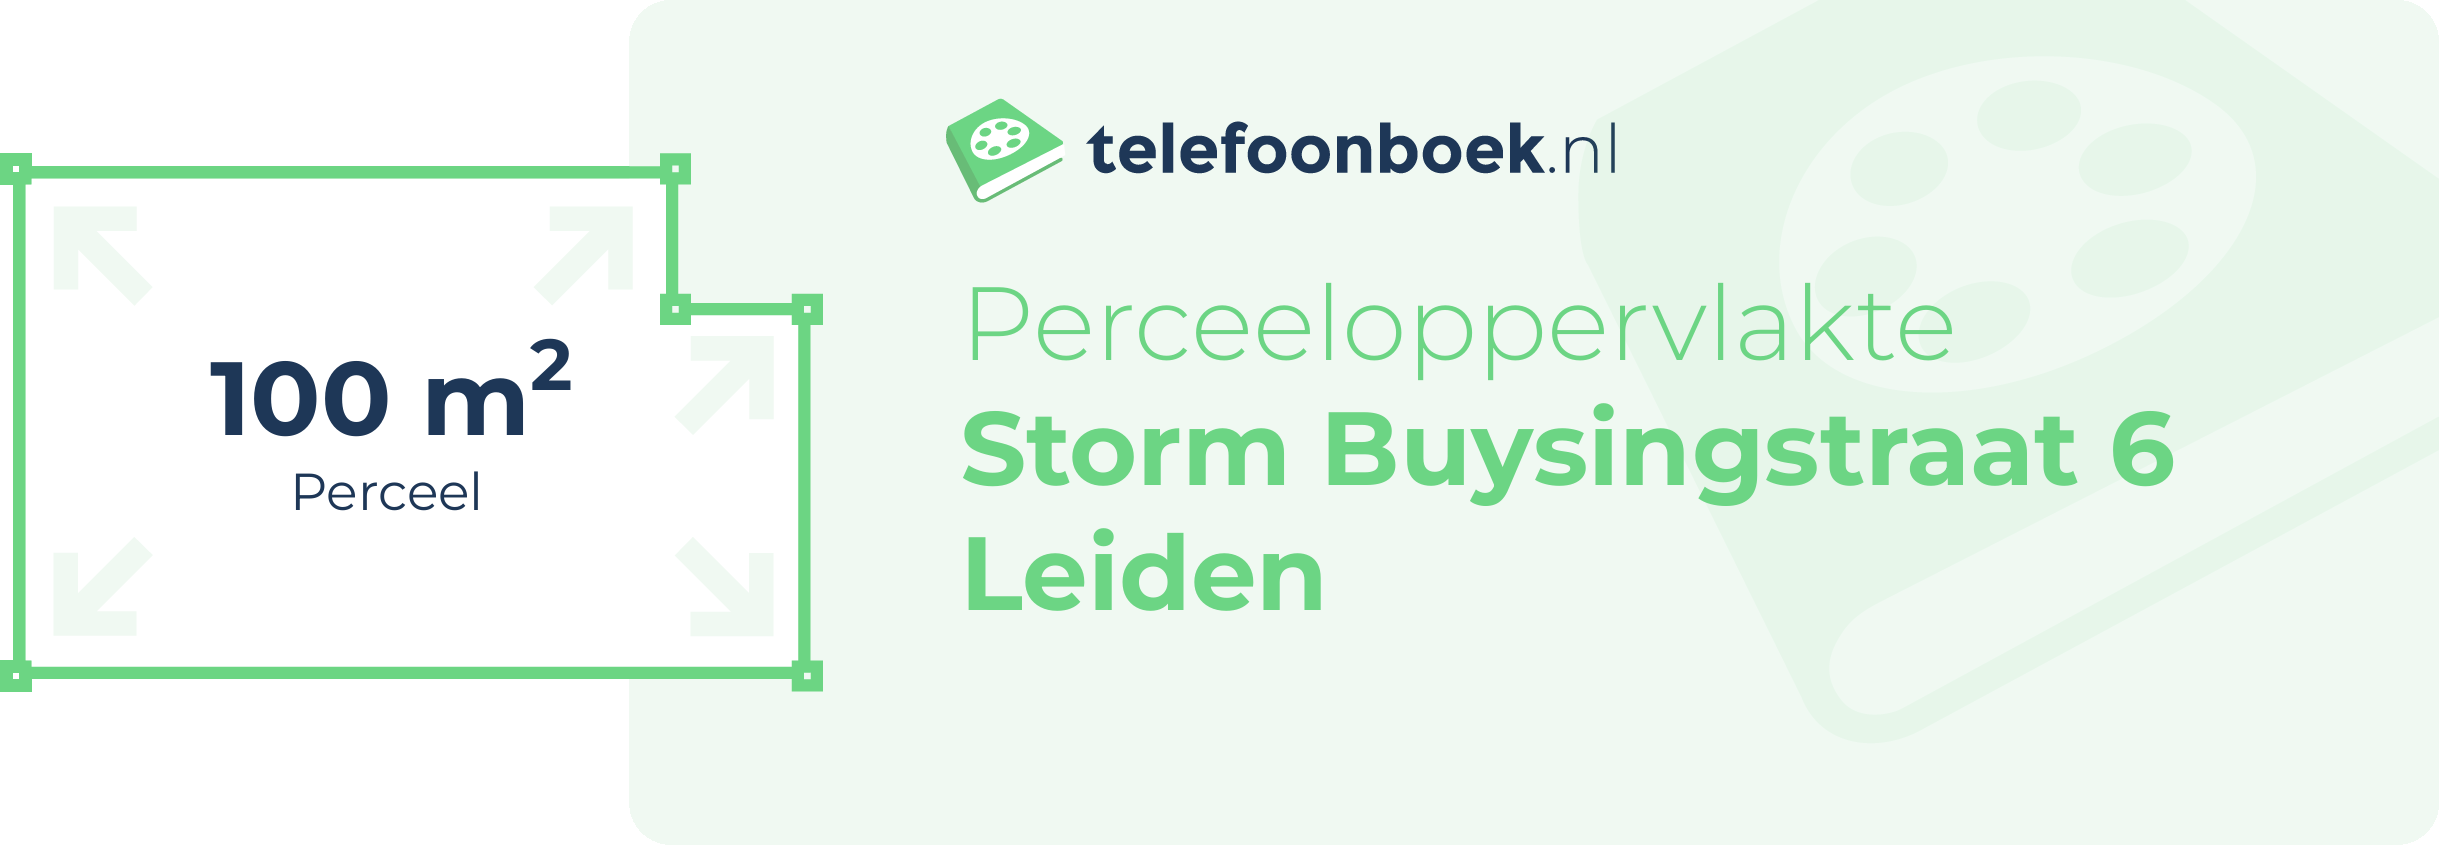 Perceeloppervlakte Storm Buysingstraat 6 Leiden